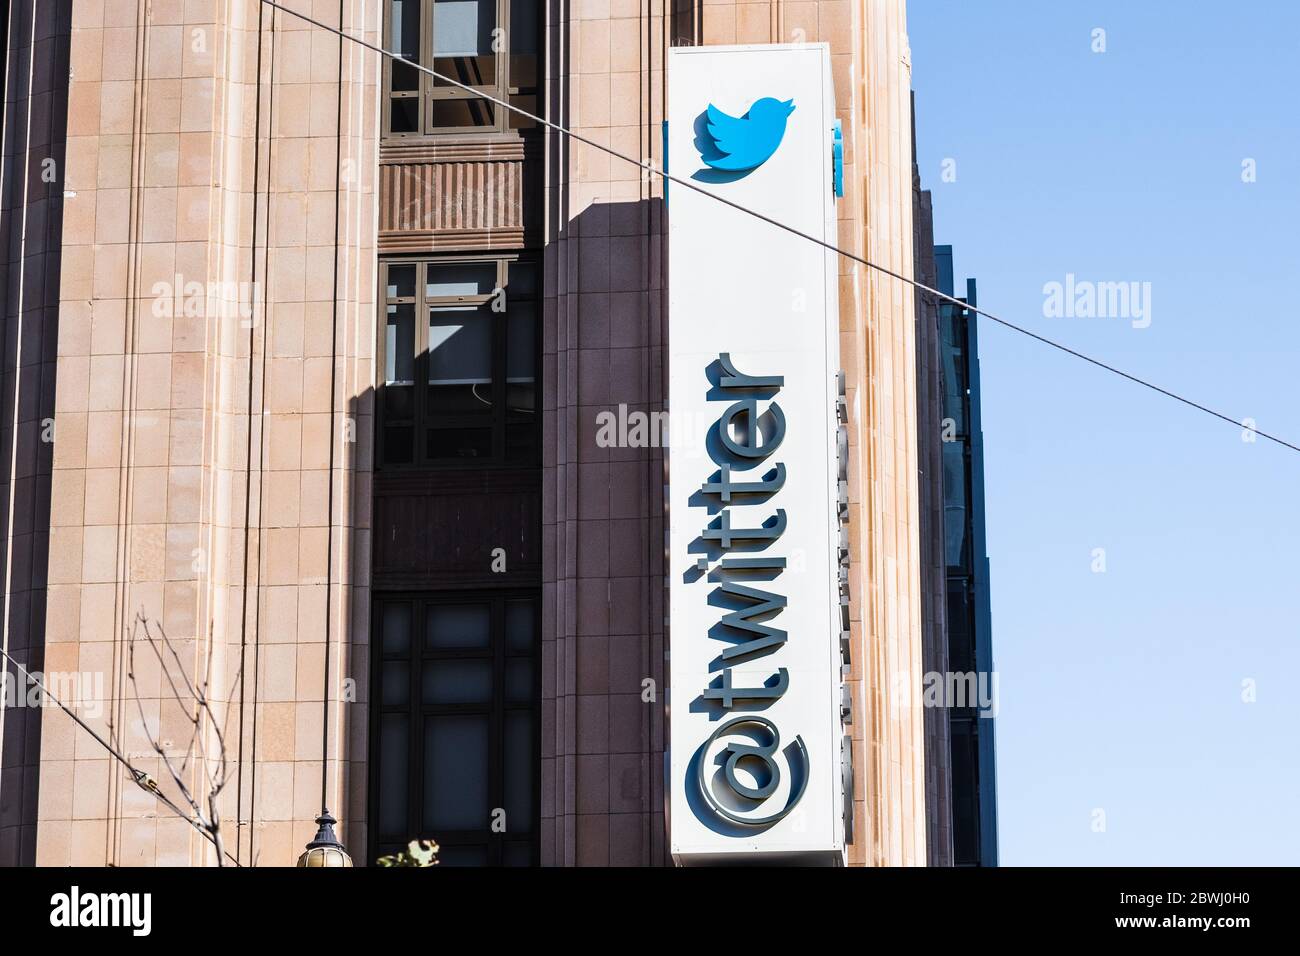 21 agosto 2019 San Francisco / CA / USA - primo piano del logo Twitter presso la sede centrale della Società; Twitter Inc è un americano microblogging e social netw Foto Stock